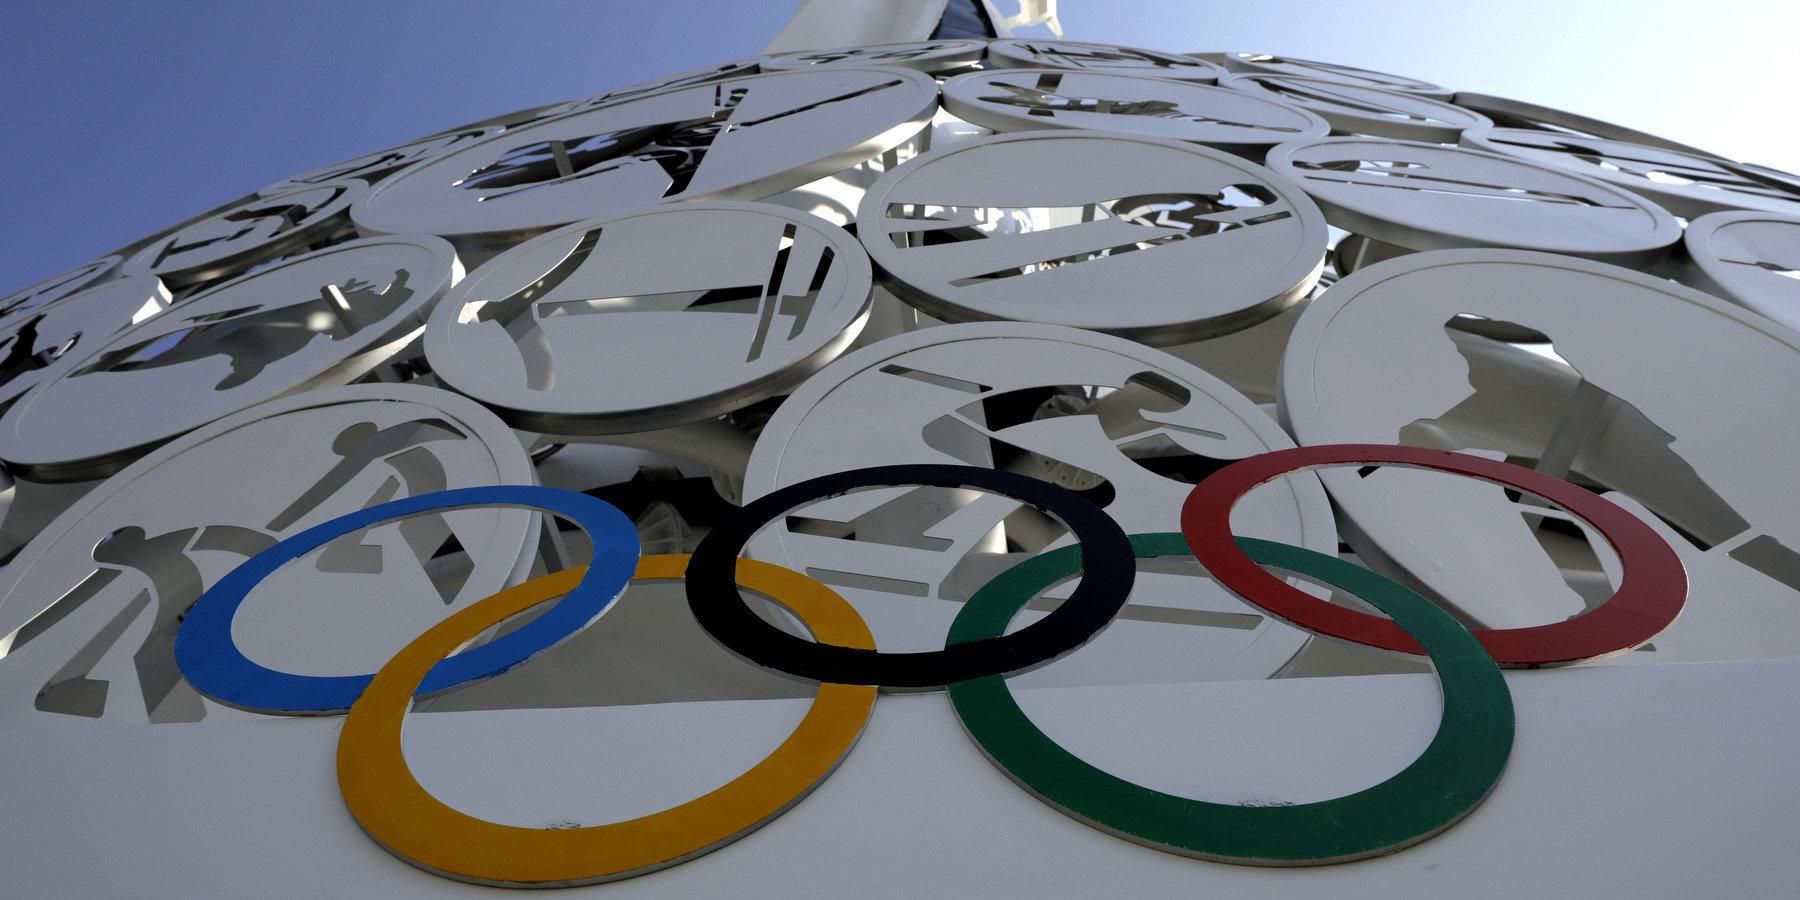 Сборную Италии могут отстранить от участия в Олимпиаде-2020